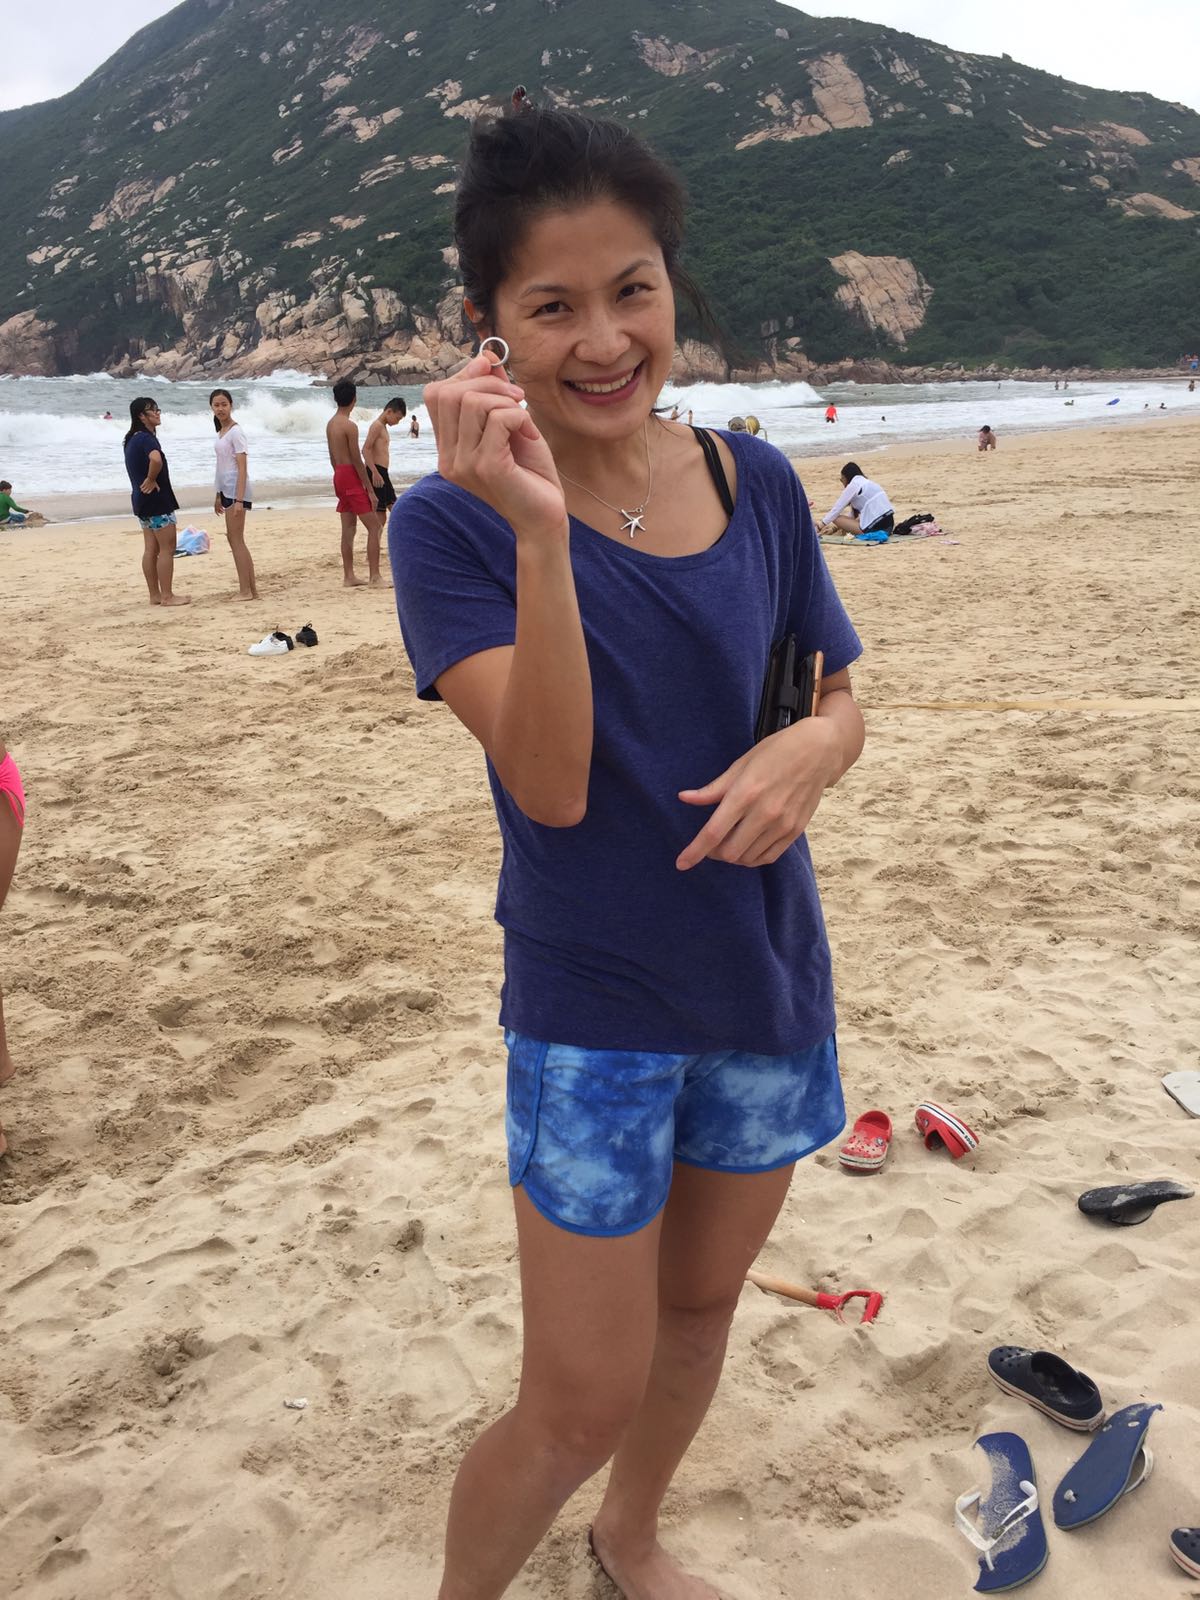 Ring lost on a Hong Kong beach